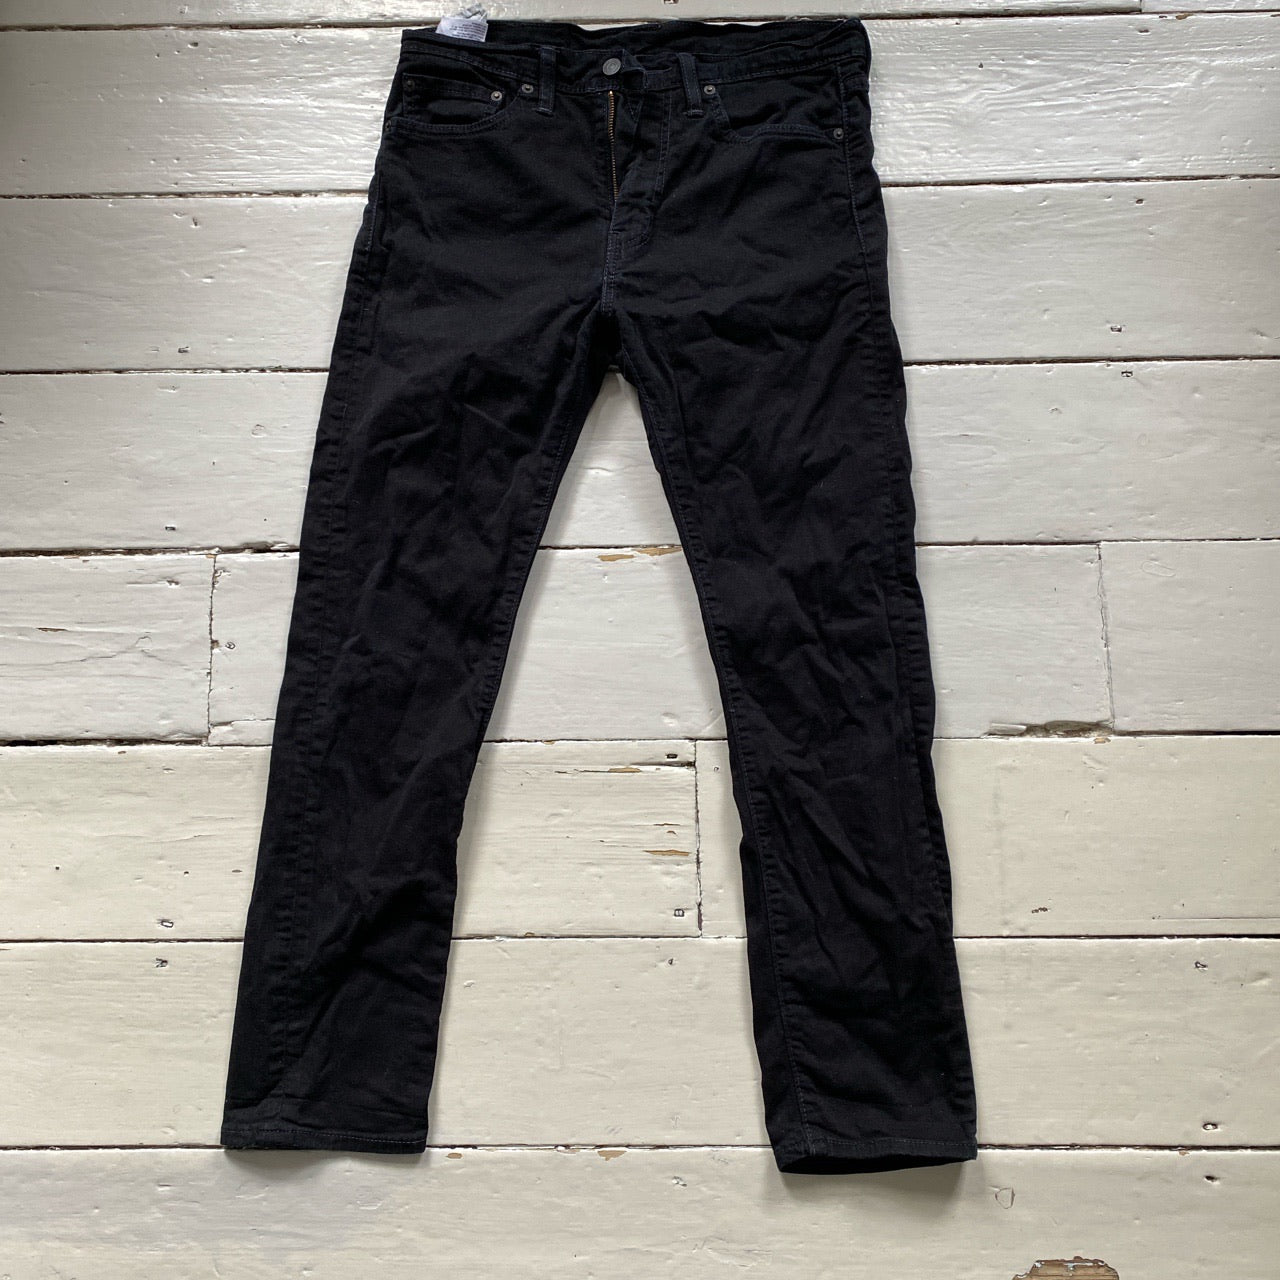 Levis Black 510 Jeans (31/30)